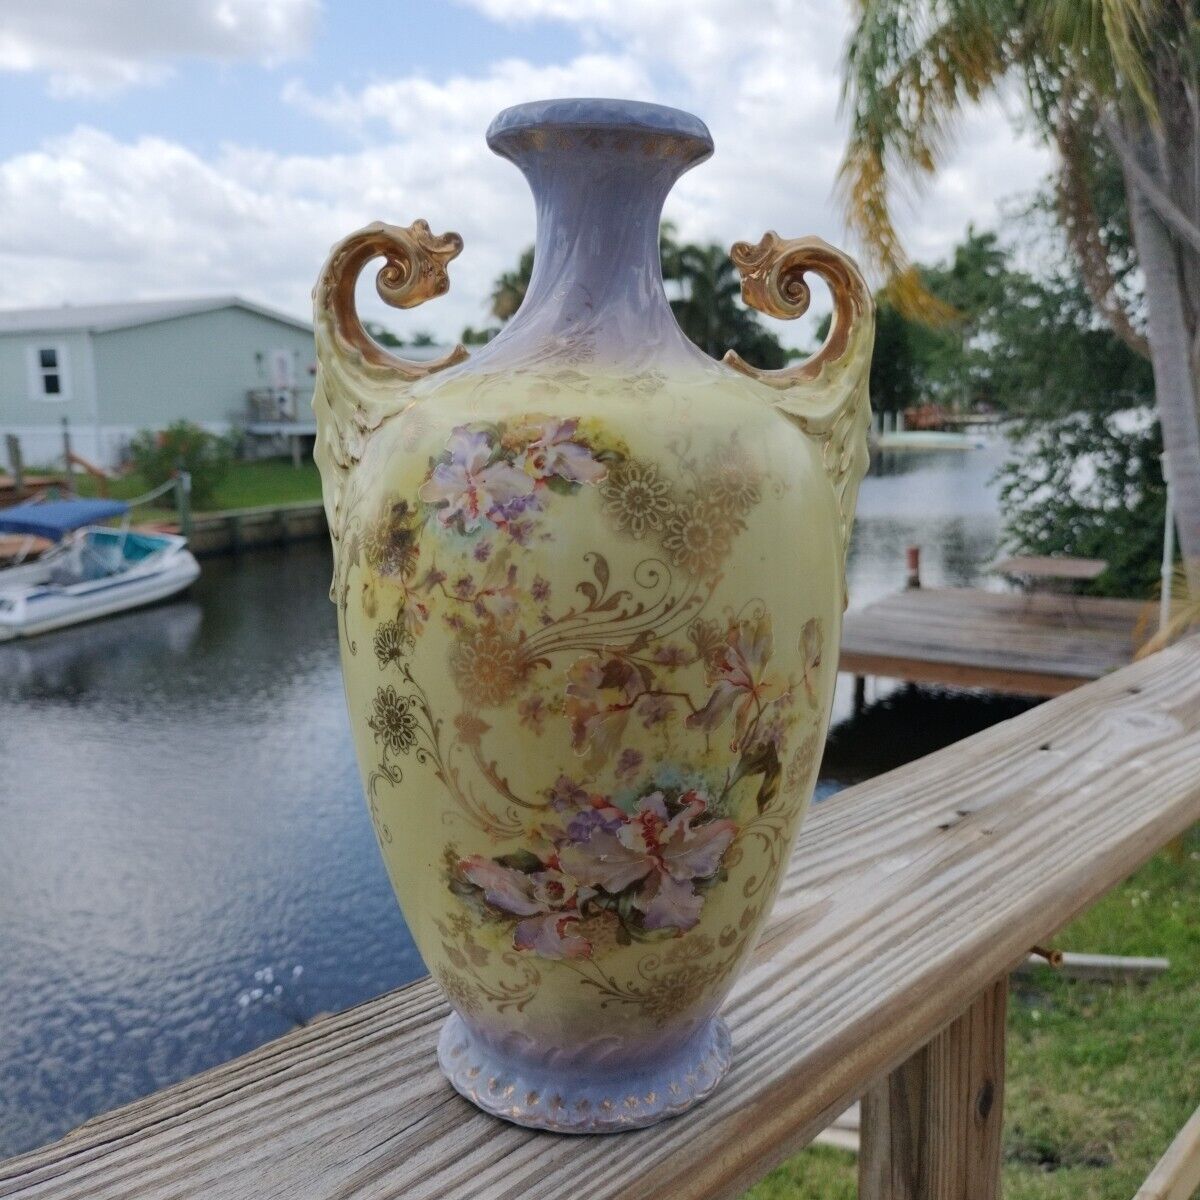 Vintage Royal Saxe Handpainted Vase Germany Stamped 318 12